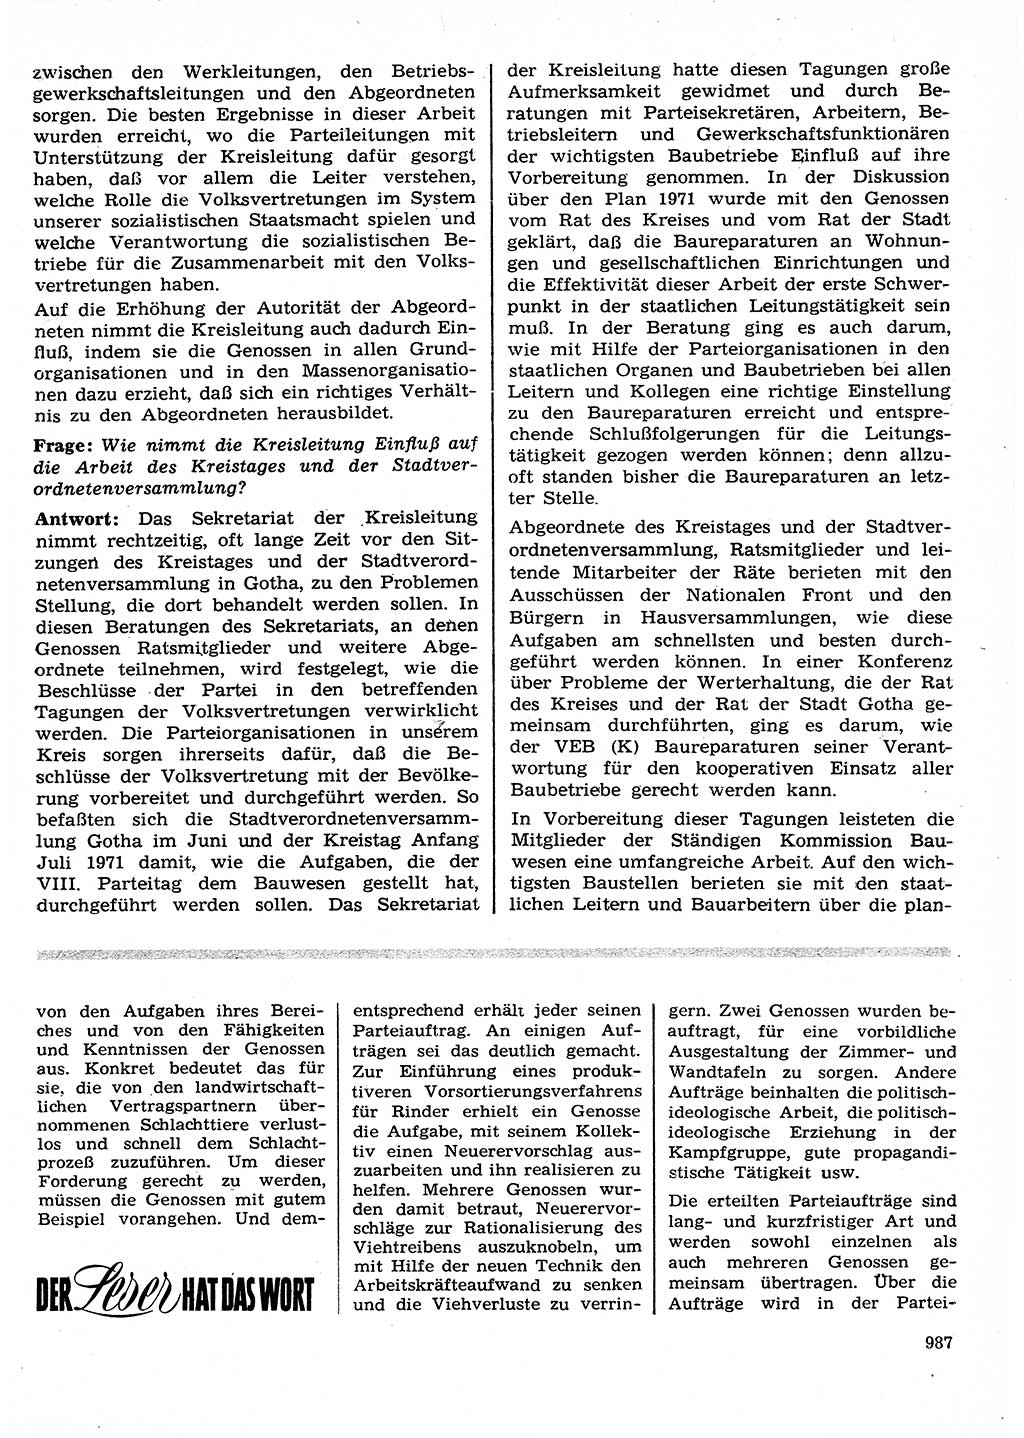 Neuer Weg (NW), Organ des Zentralkomitees (ZK) der SED (Sozialistische Einheitspartei Deutschlands) für Fragen des Parteilebens, 26. Jahrgang [Deutsche Demokratische Republik (DDR)] 1971, Seite 987 (NW ZK SED DDR 1971, S. 987)